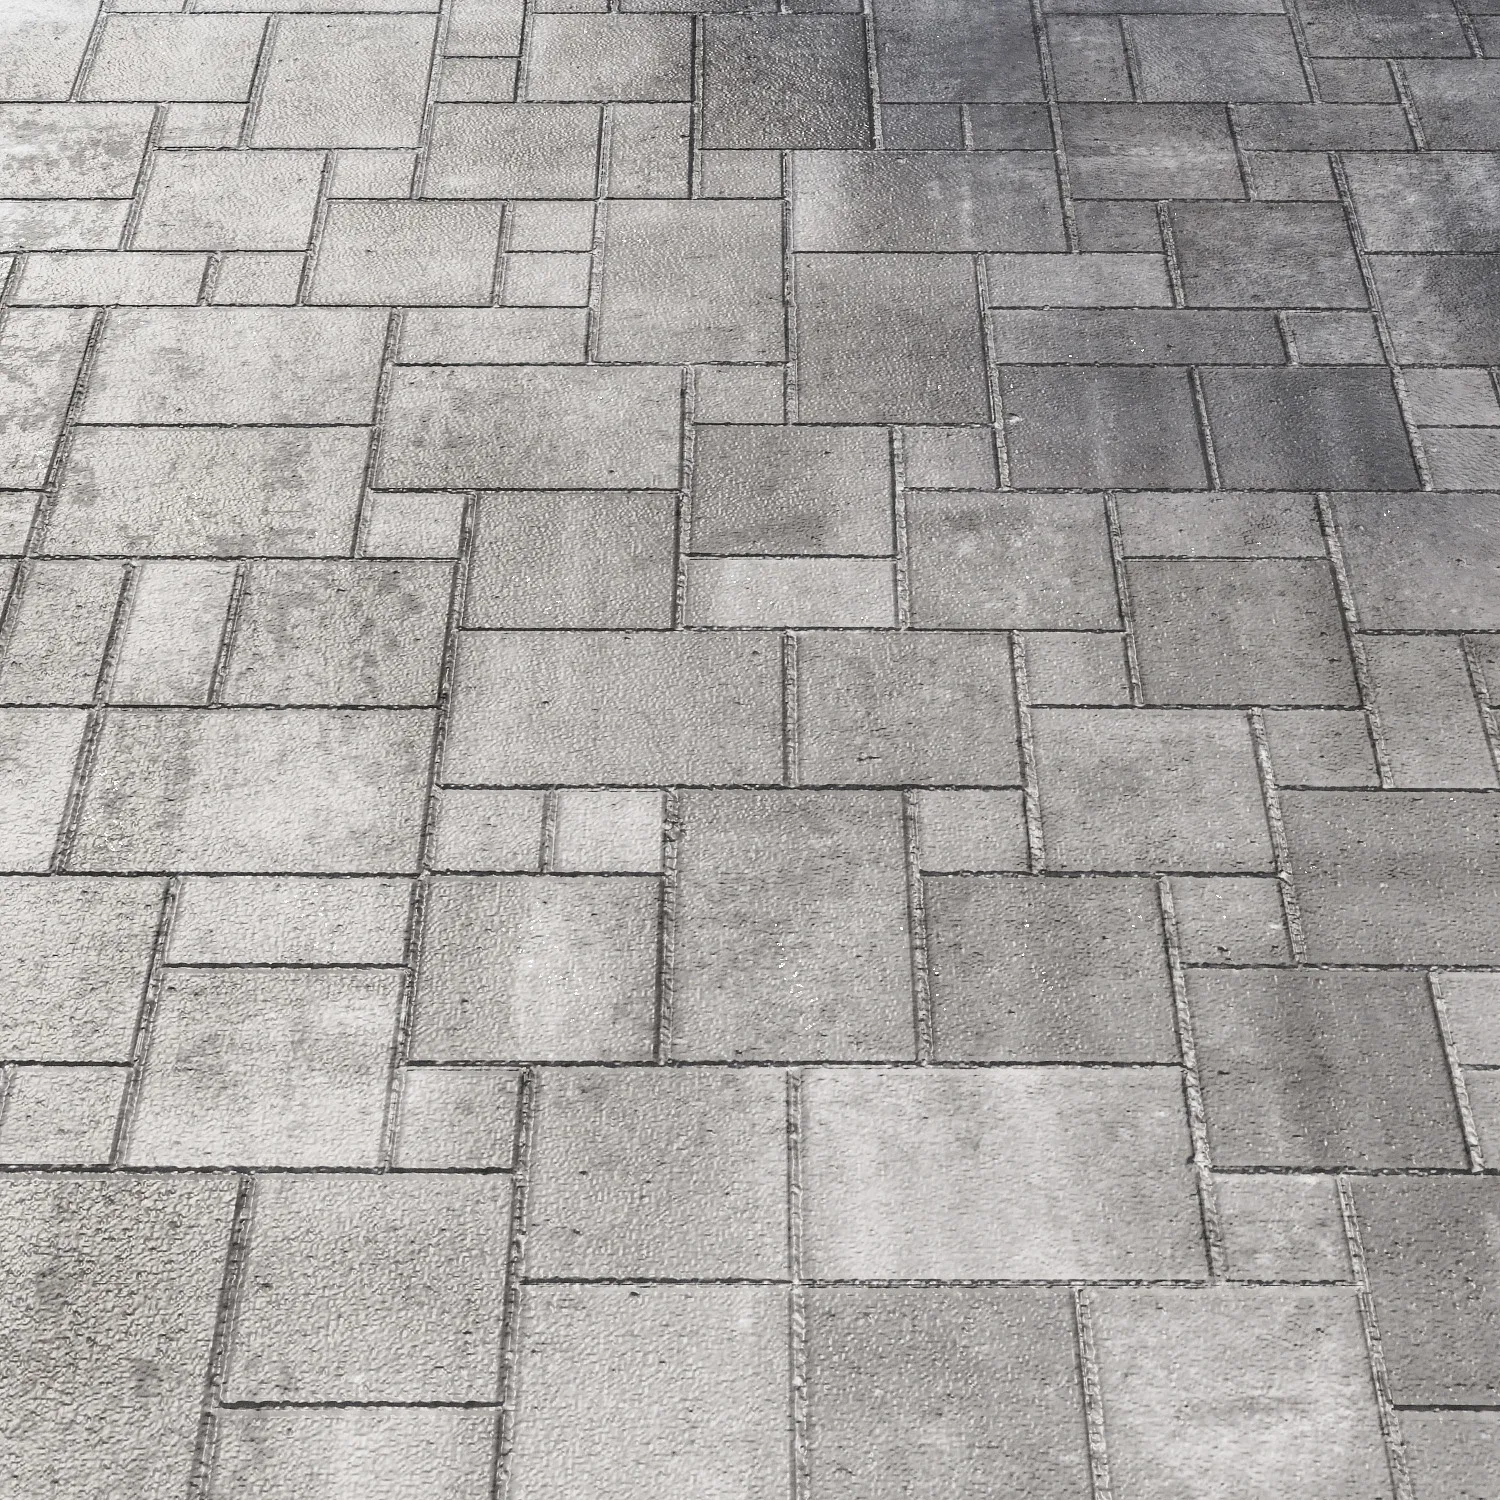 paving 01 materail groud floor